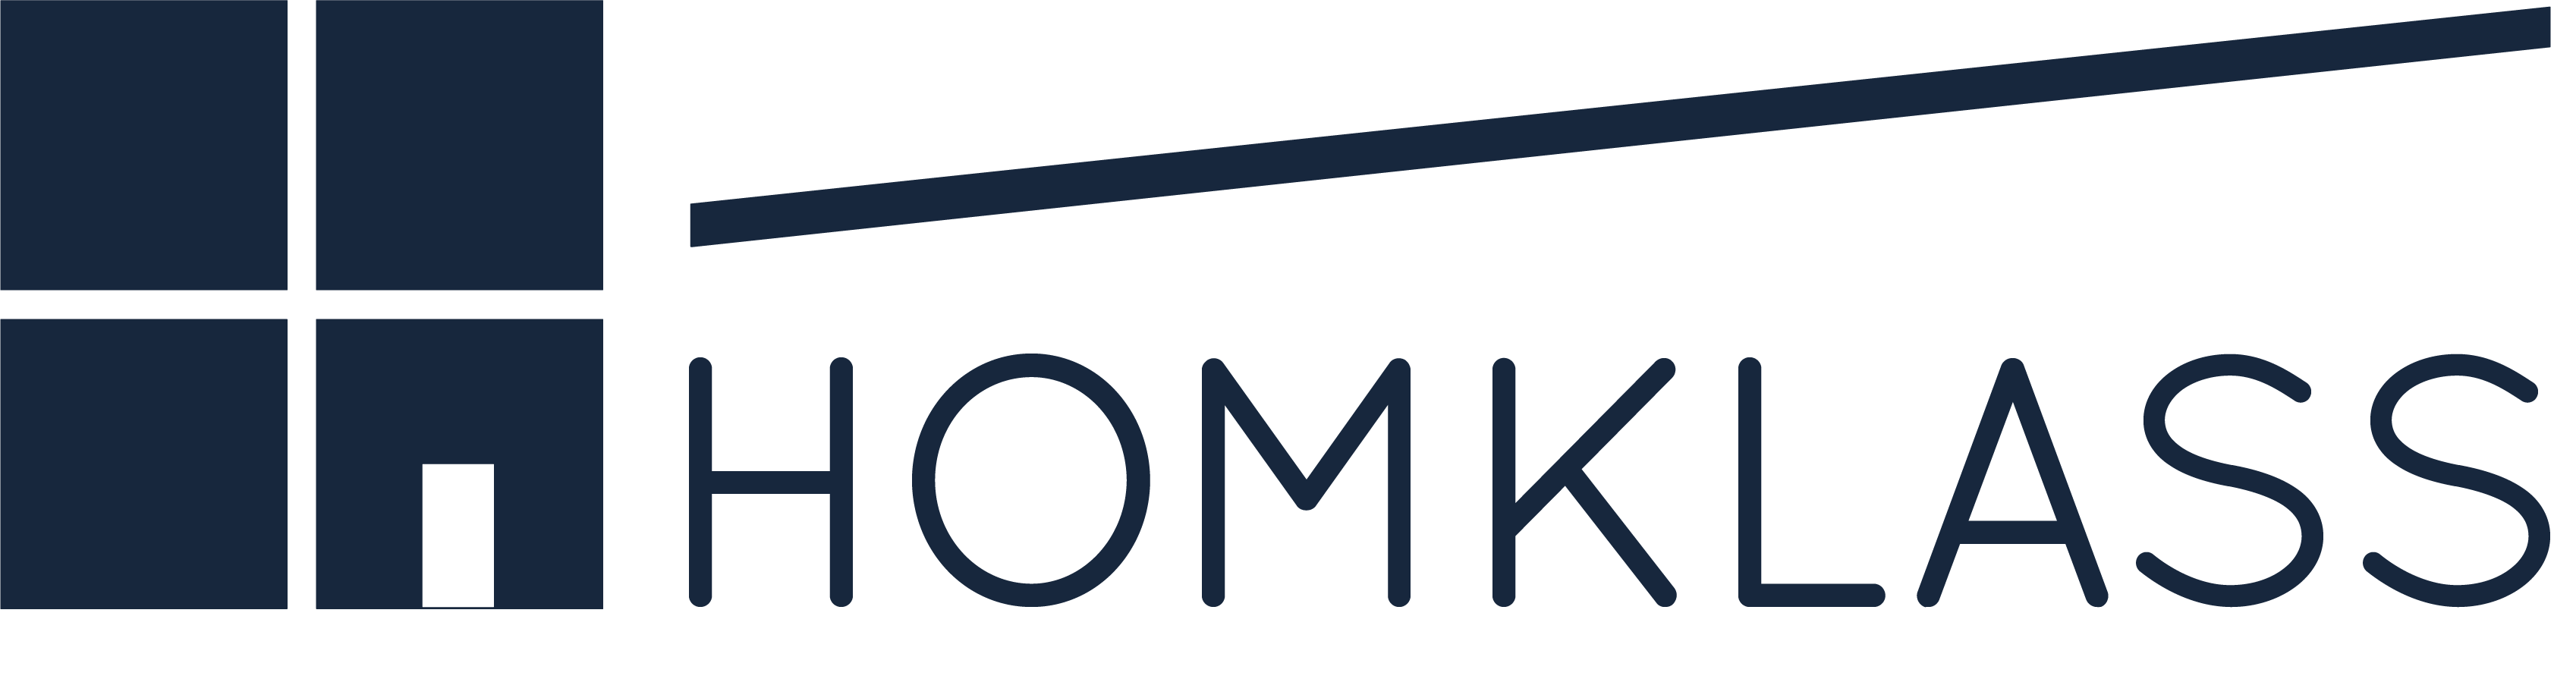 homklass.com